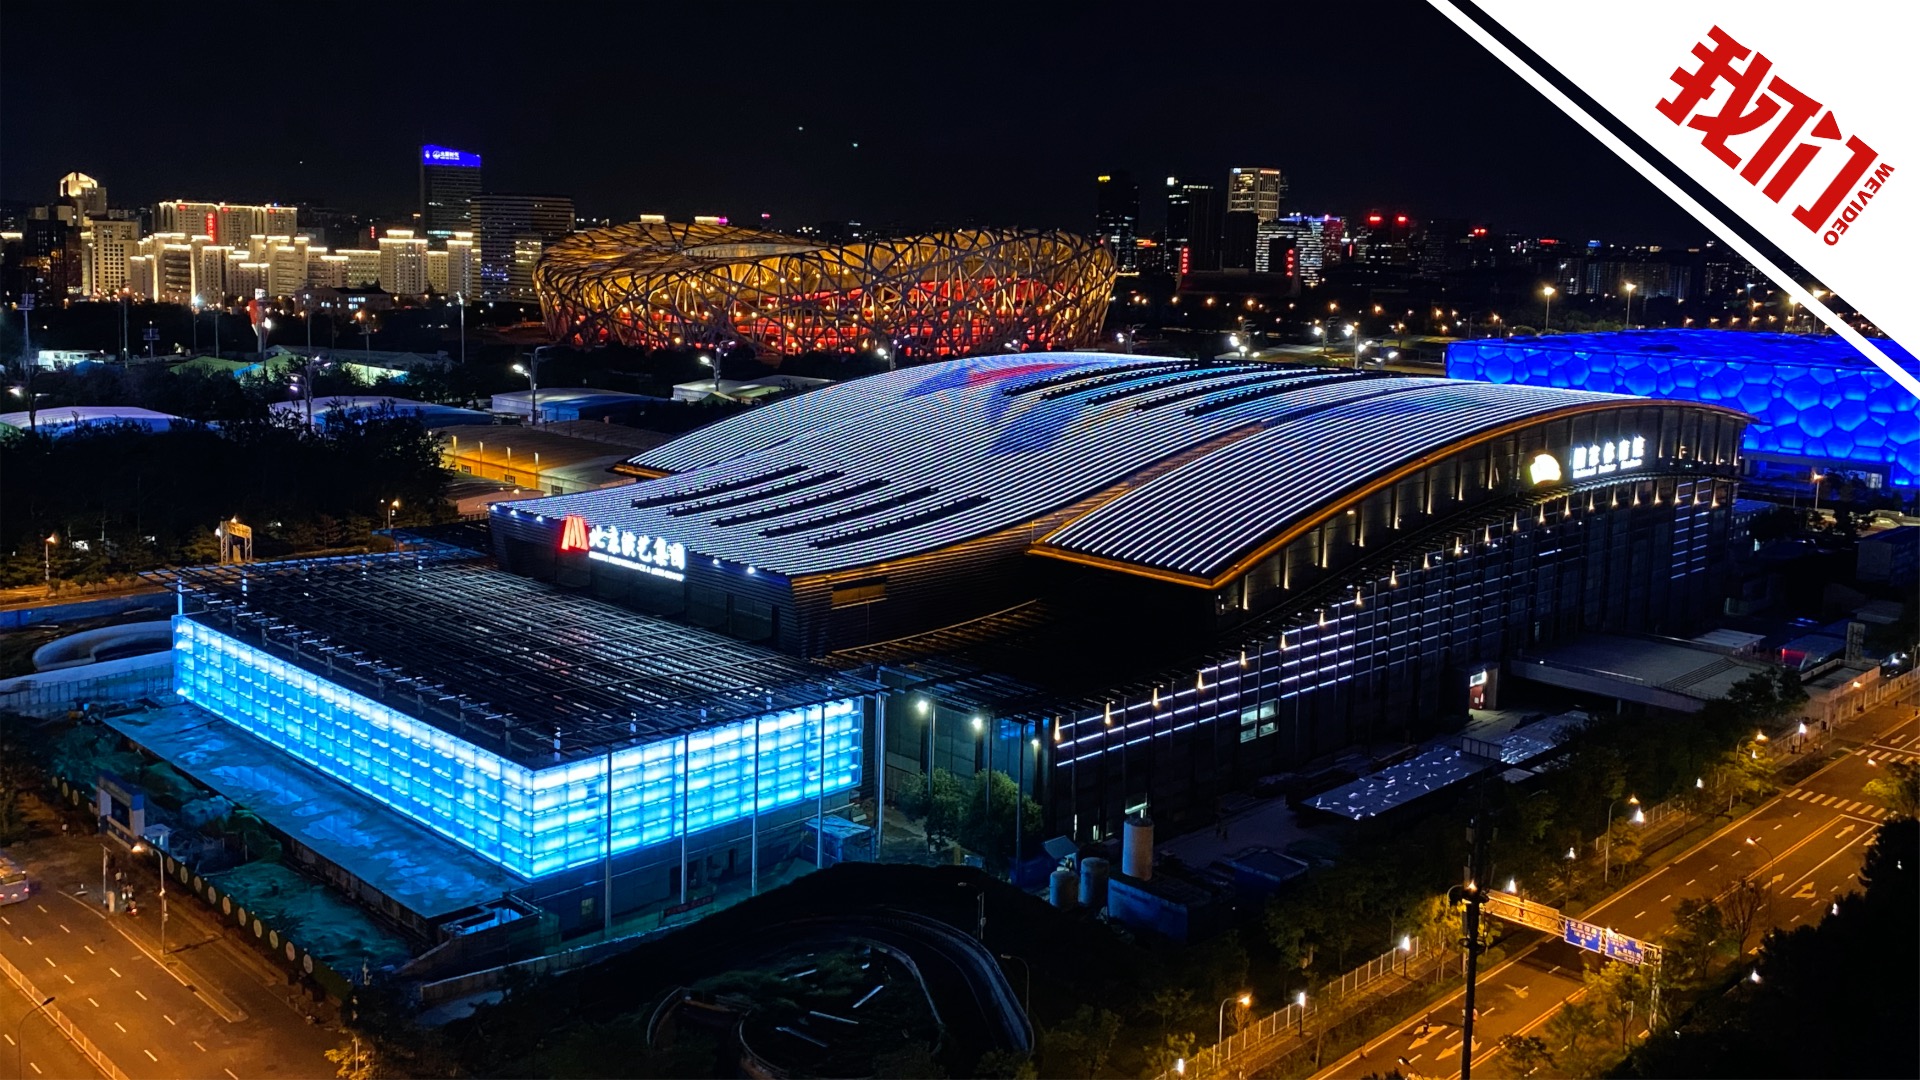 国家体育馆:以中国 折扇为灵感设计 扩建场地外墙似冰砖